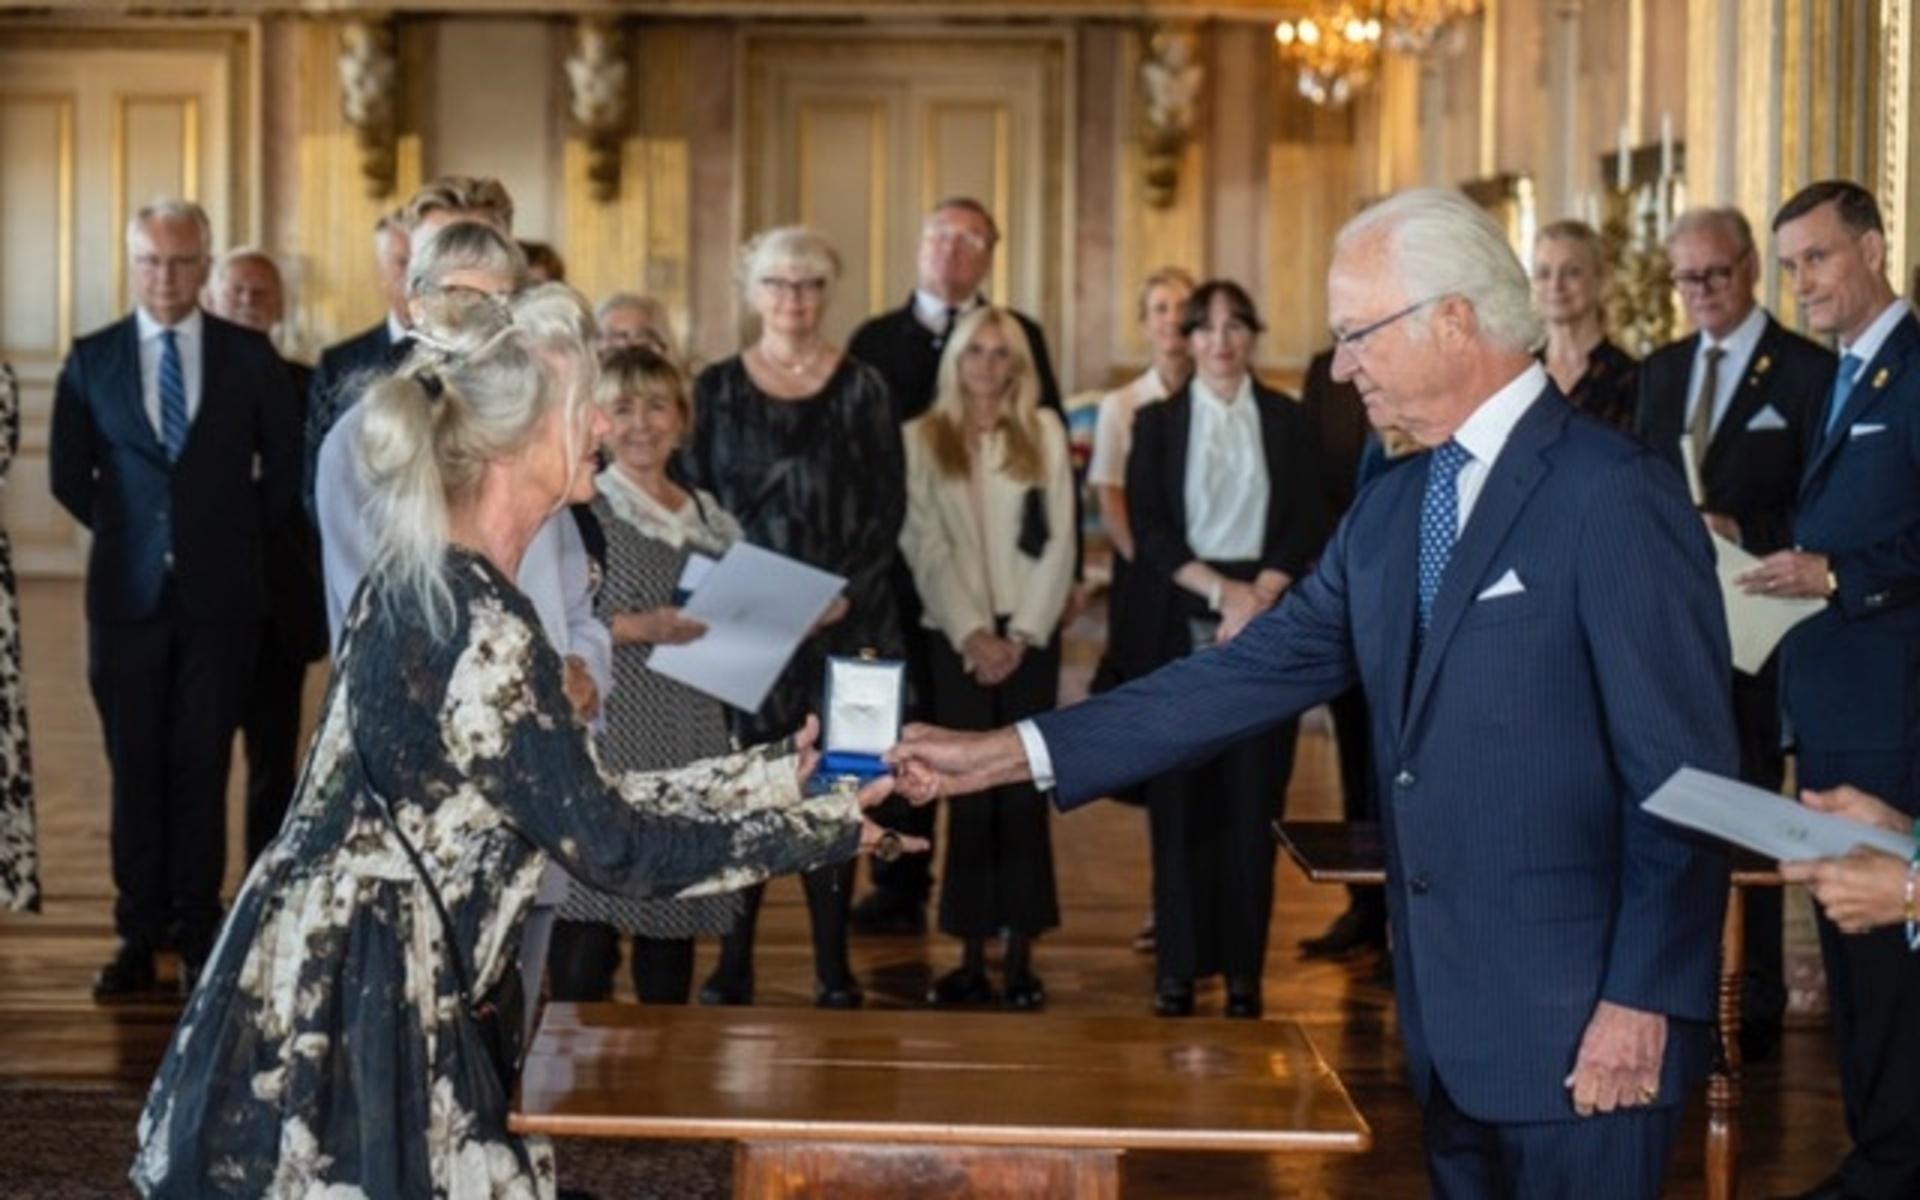 Här räcker kungen över medaljen till Irène Sjöberg-Lundin. I bakgrunden syns bland andra Beatrice Ask (M), tidigare kulturminister, och Per Nuder (S), som var där som anhörig och inte fick ta någon egen medalj med sig hem.